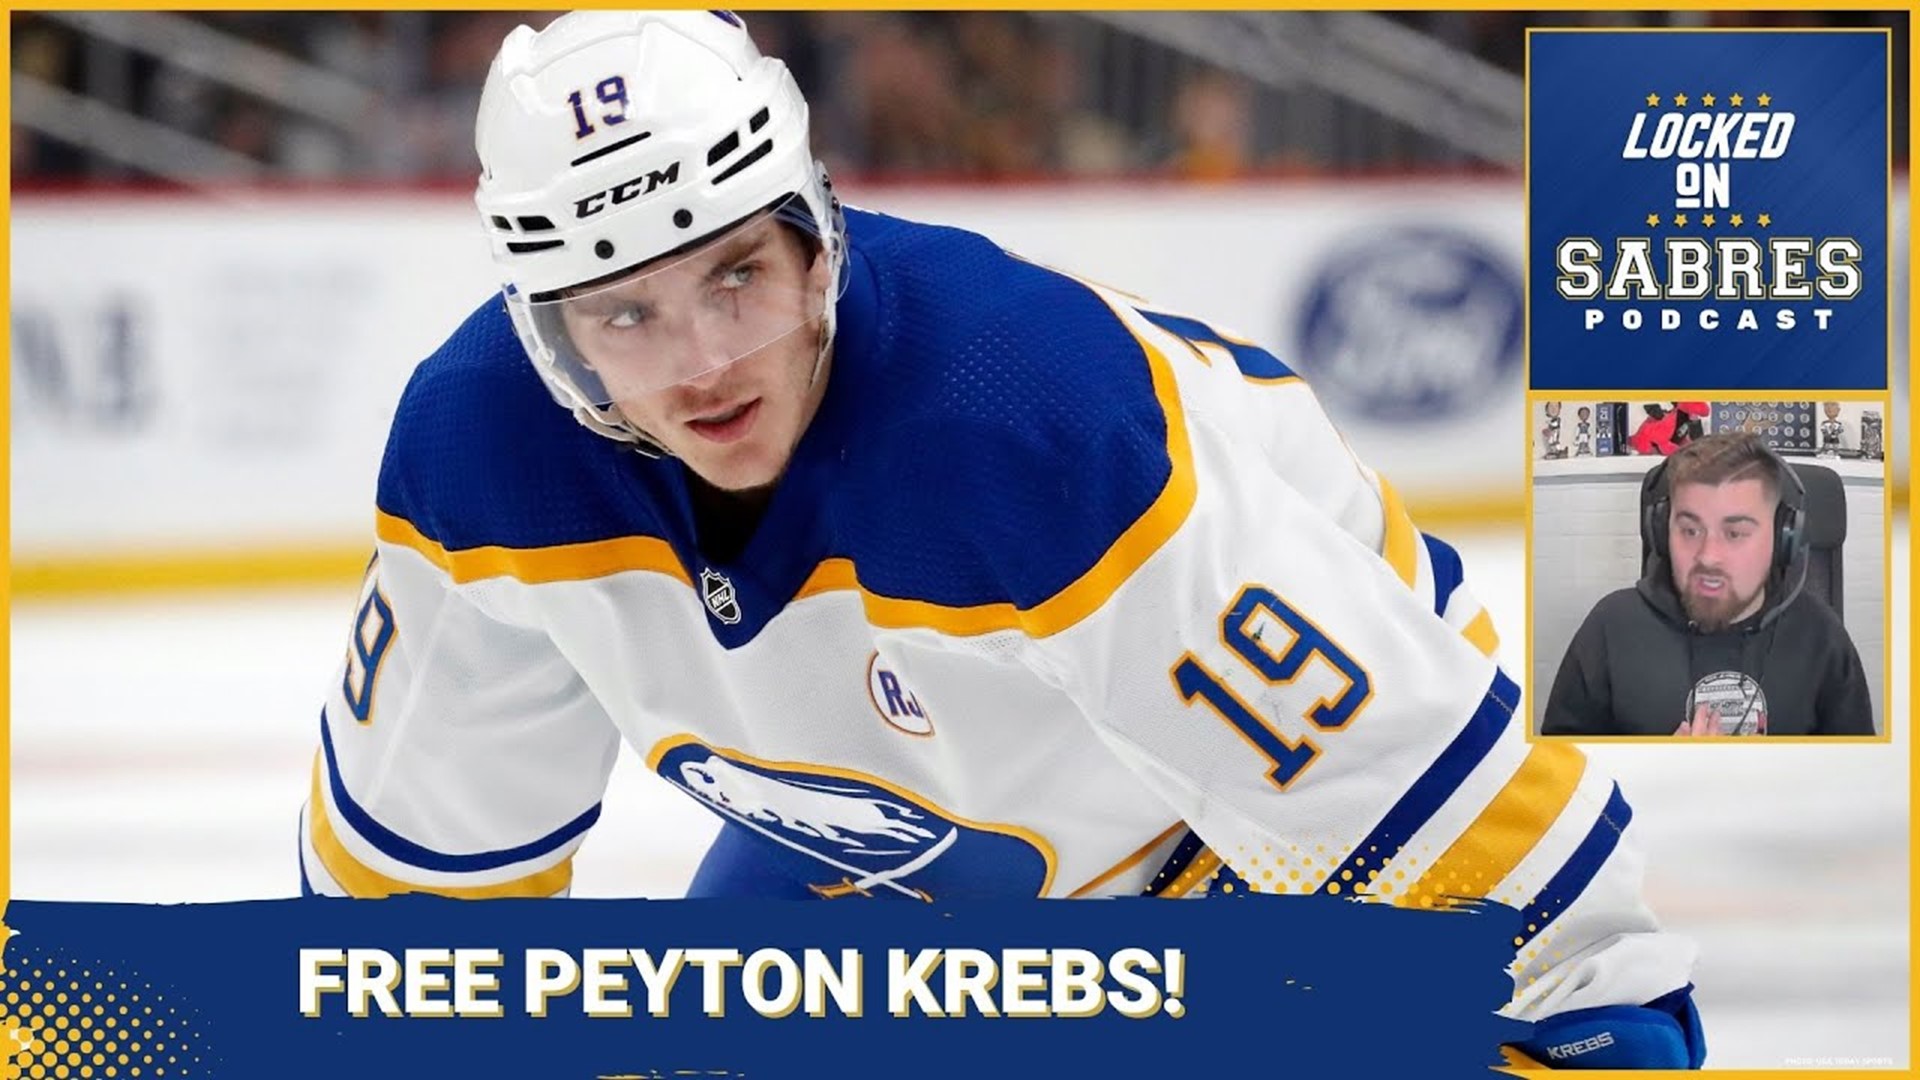 Free Peyton Krebs!